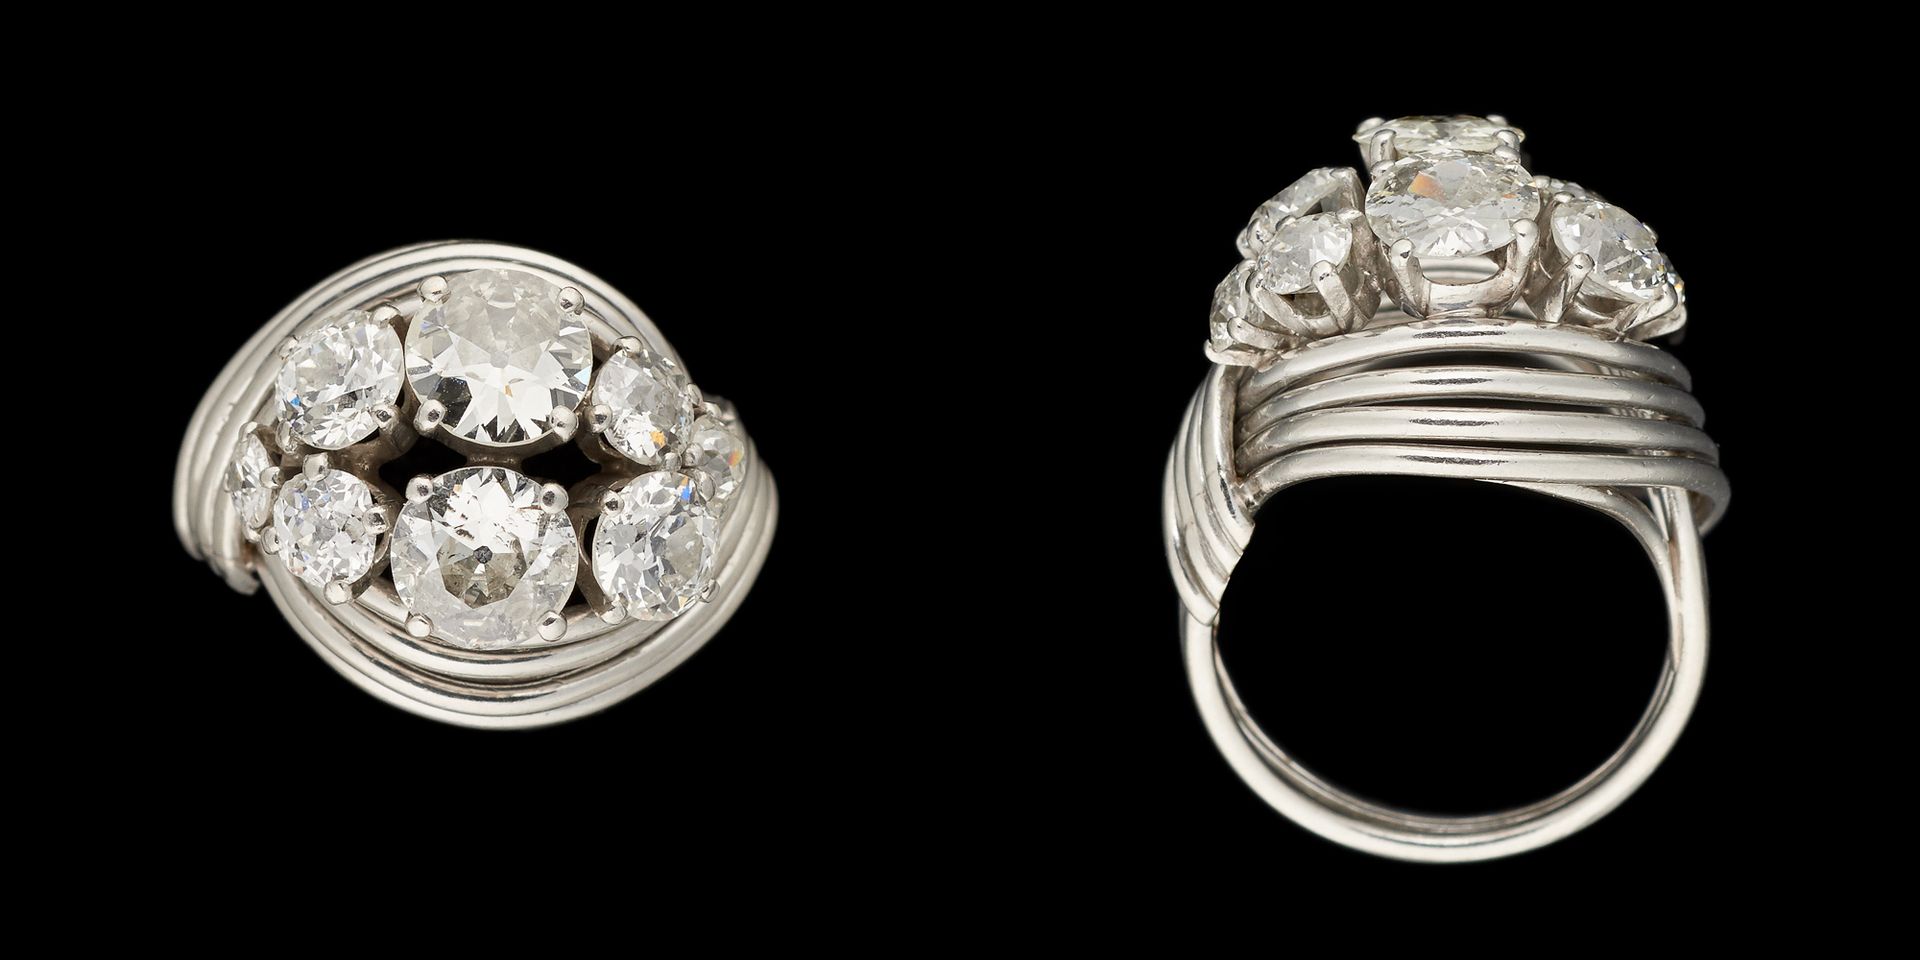 Joaillerie. 宝石：白金戒指镶嵌老式切割钻石，重达+/-3.20克拉，包括两颗主石，每颗重达+/-0.80克拉。

手指大小：+/-52。